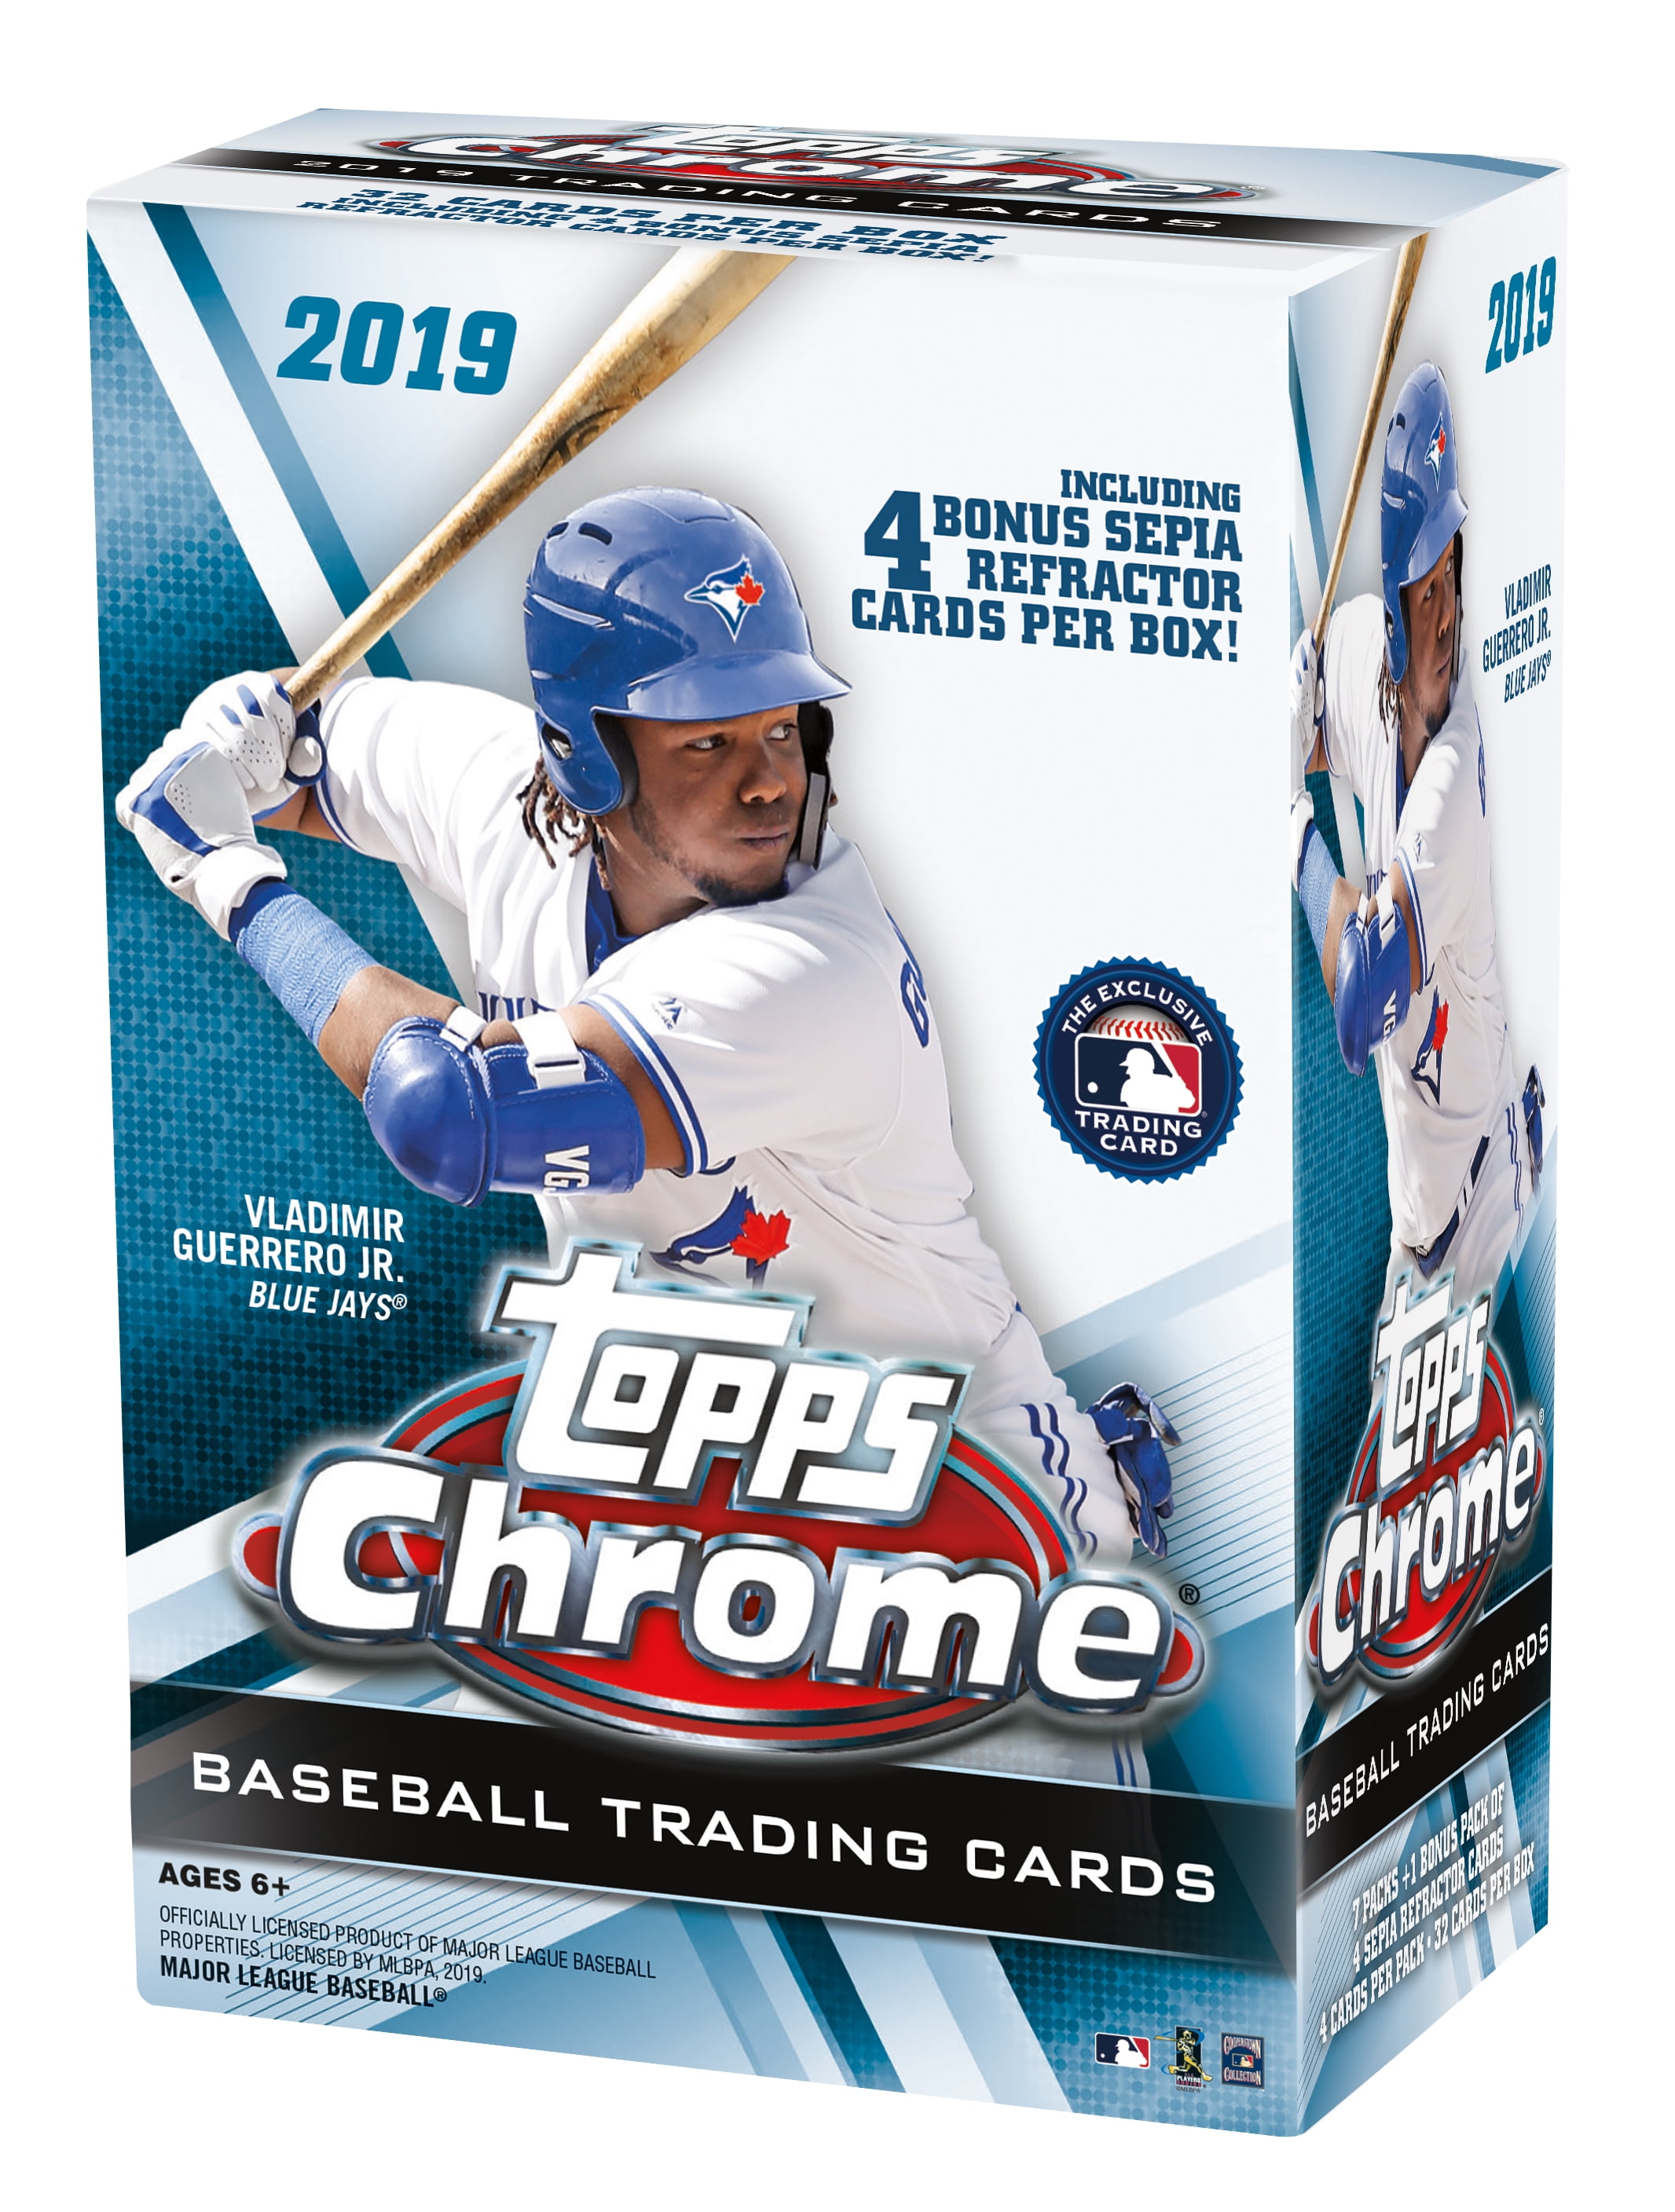 2019 Topps Chrome Baseball Blaster Box 8 packs total Sepia Refractor